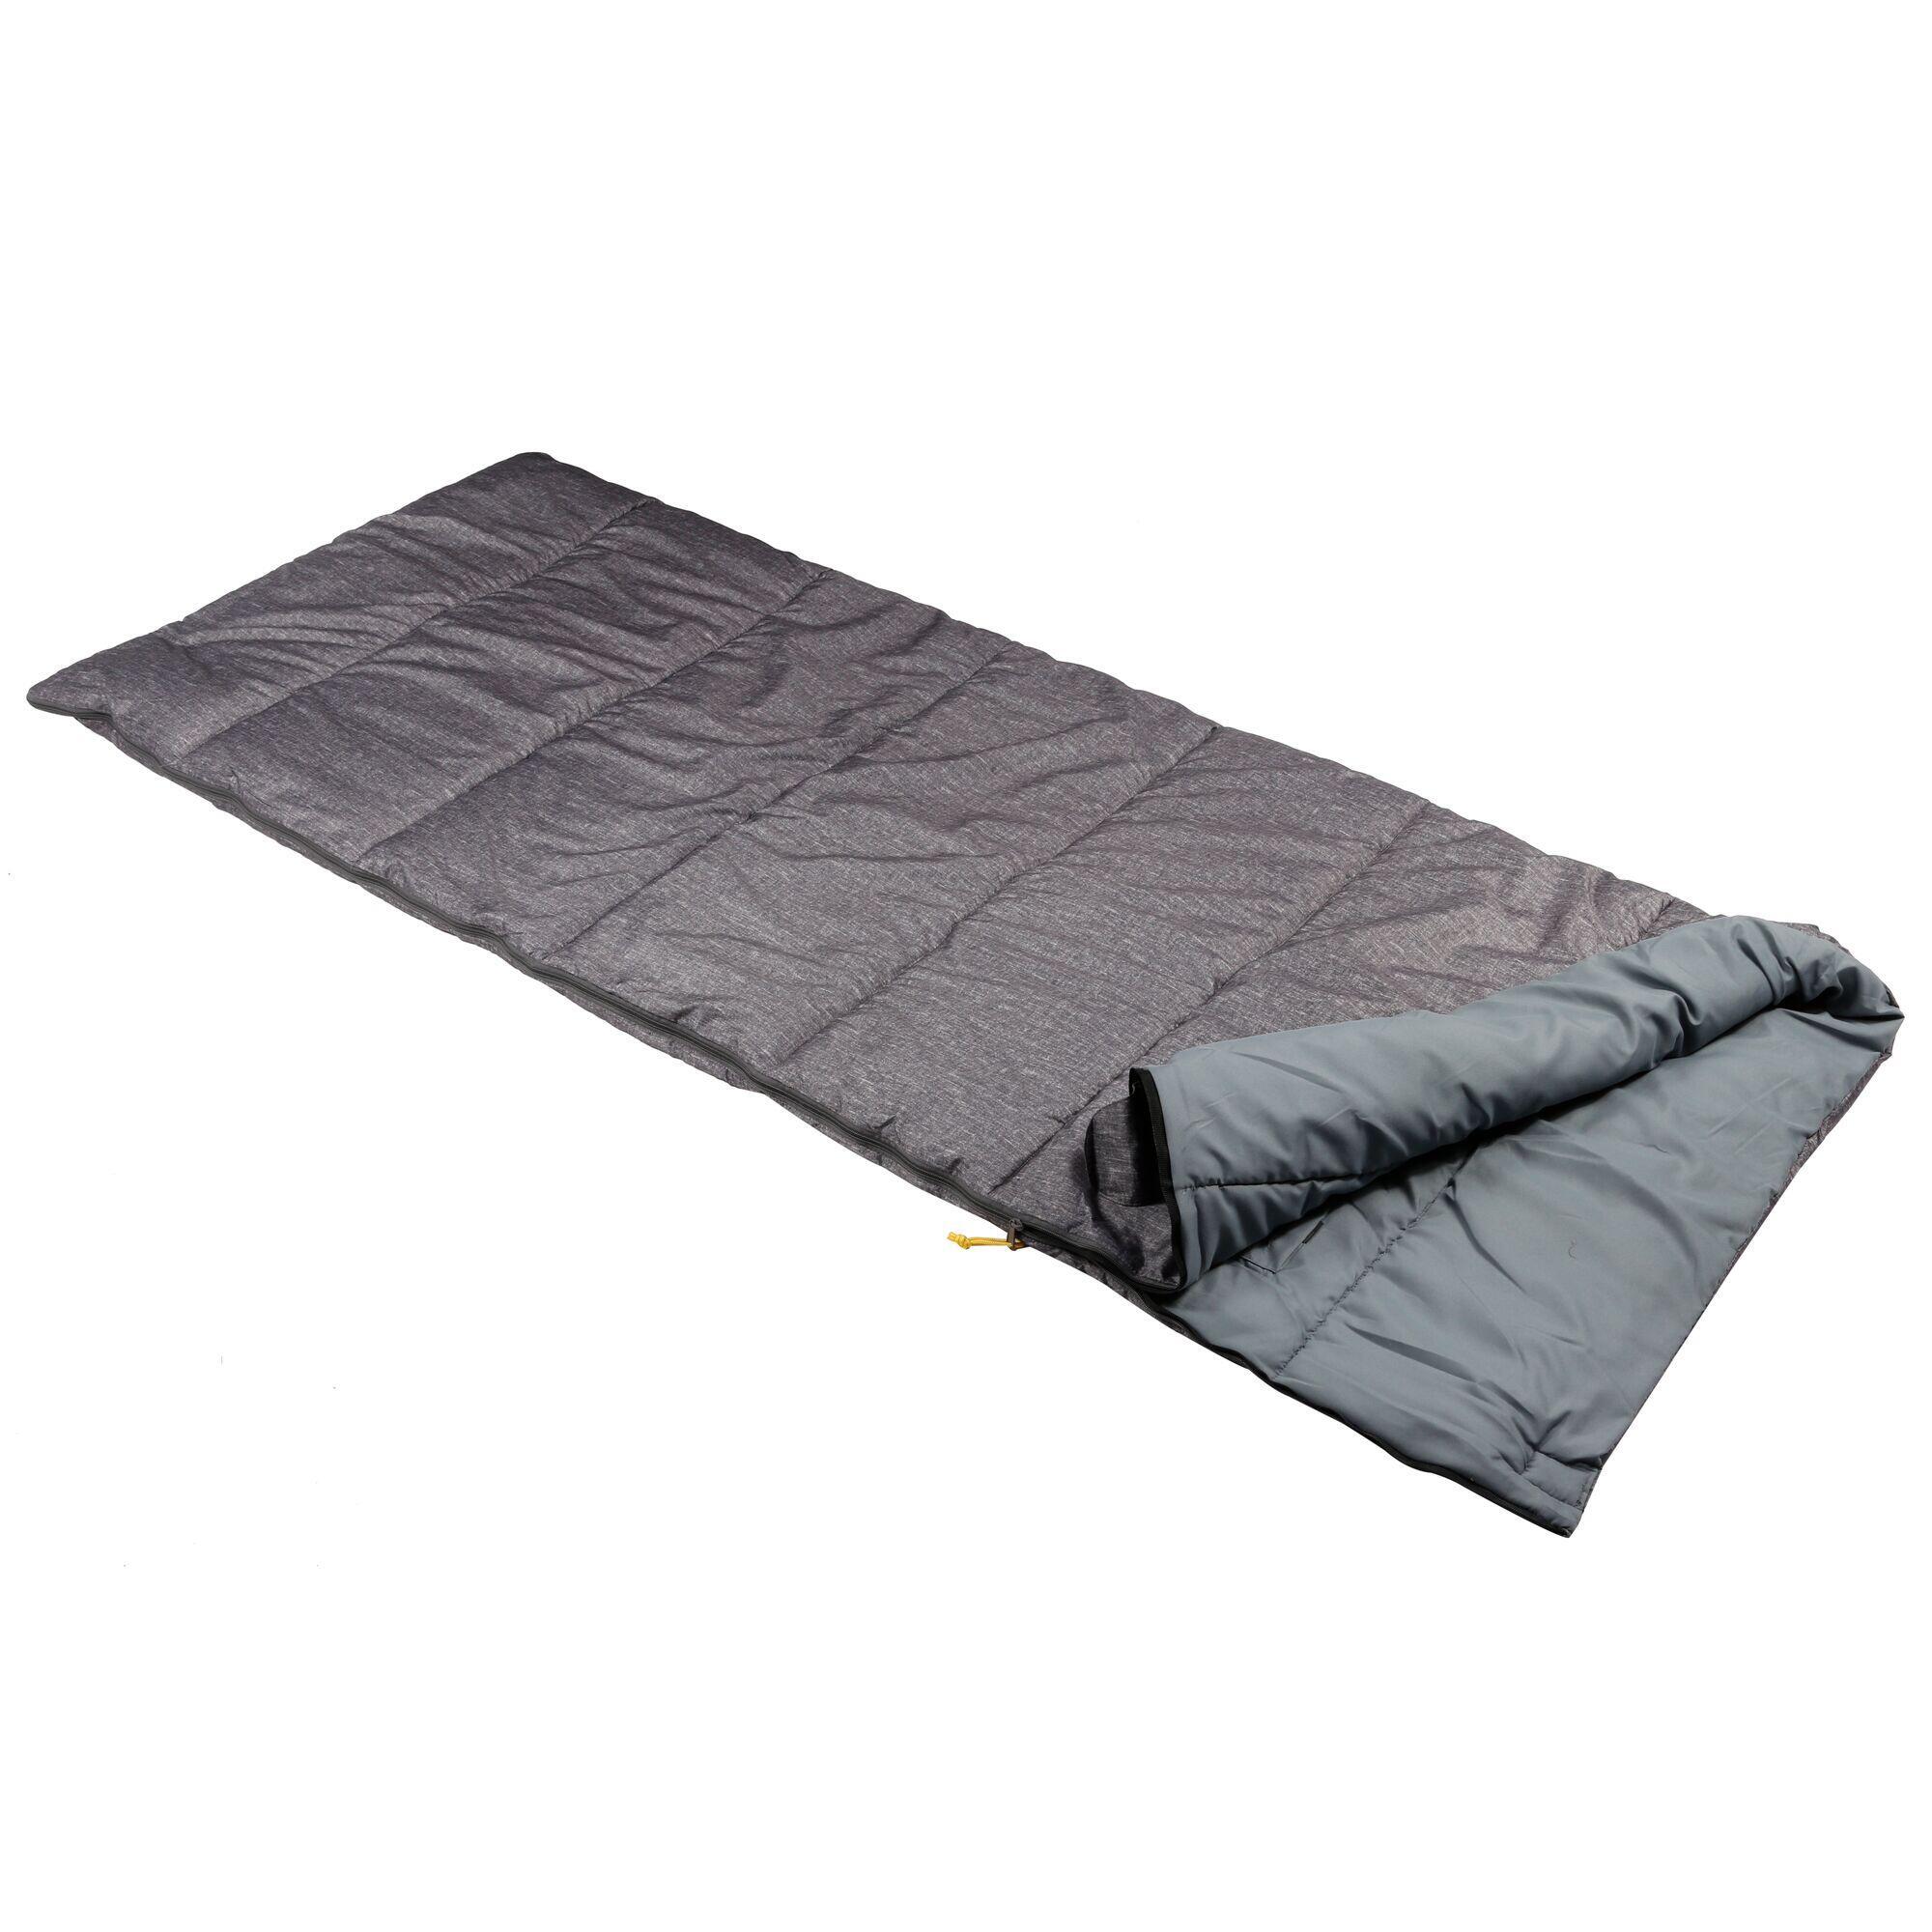 Спальный мешок Regatta Maui Single Camping для 1 человека, серый плед 1 5 спальный absolute 12885 цвет серый